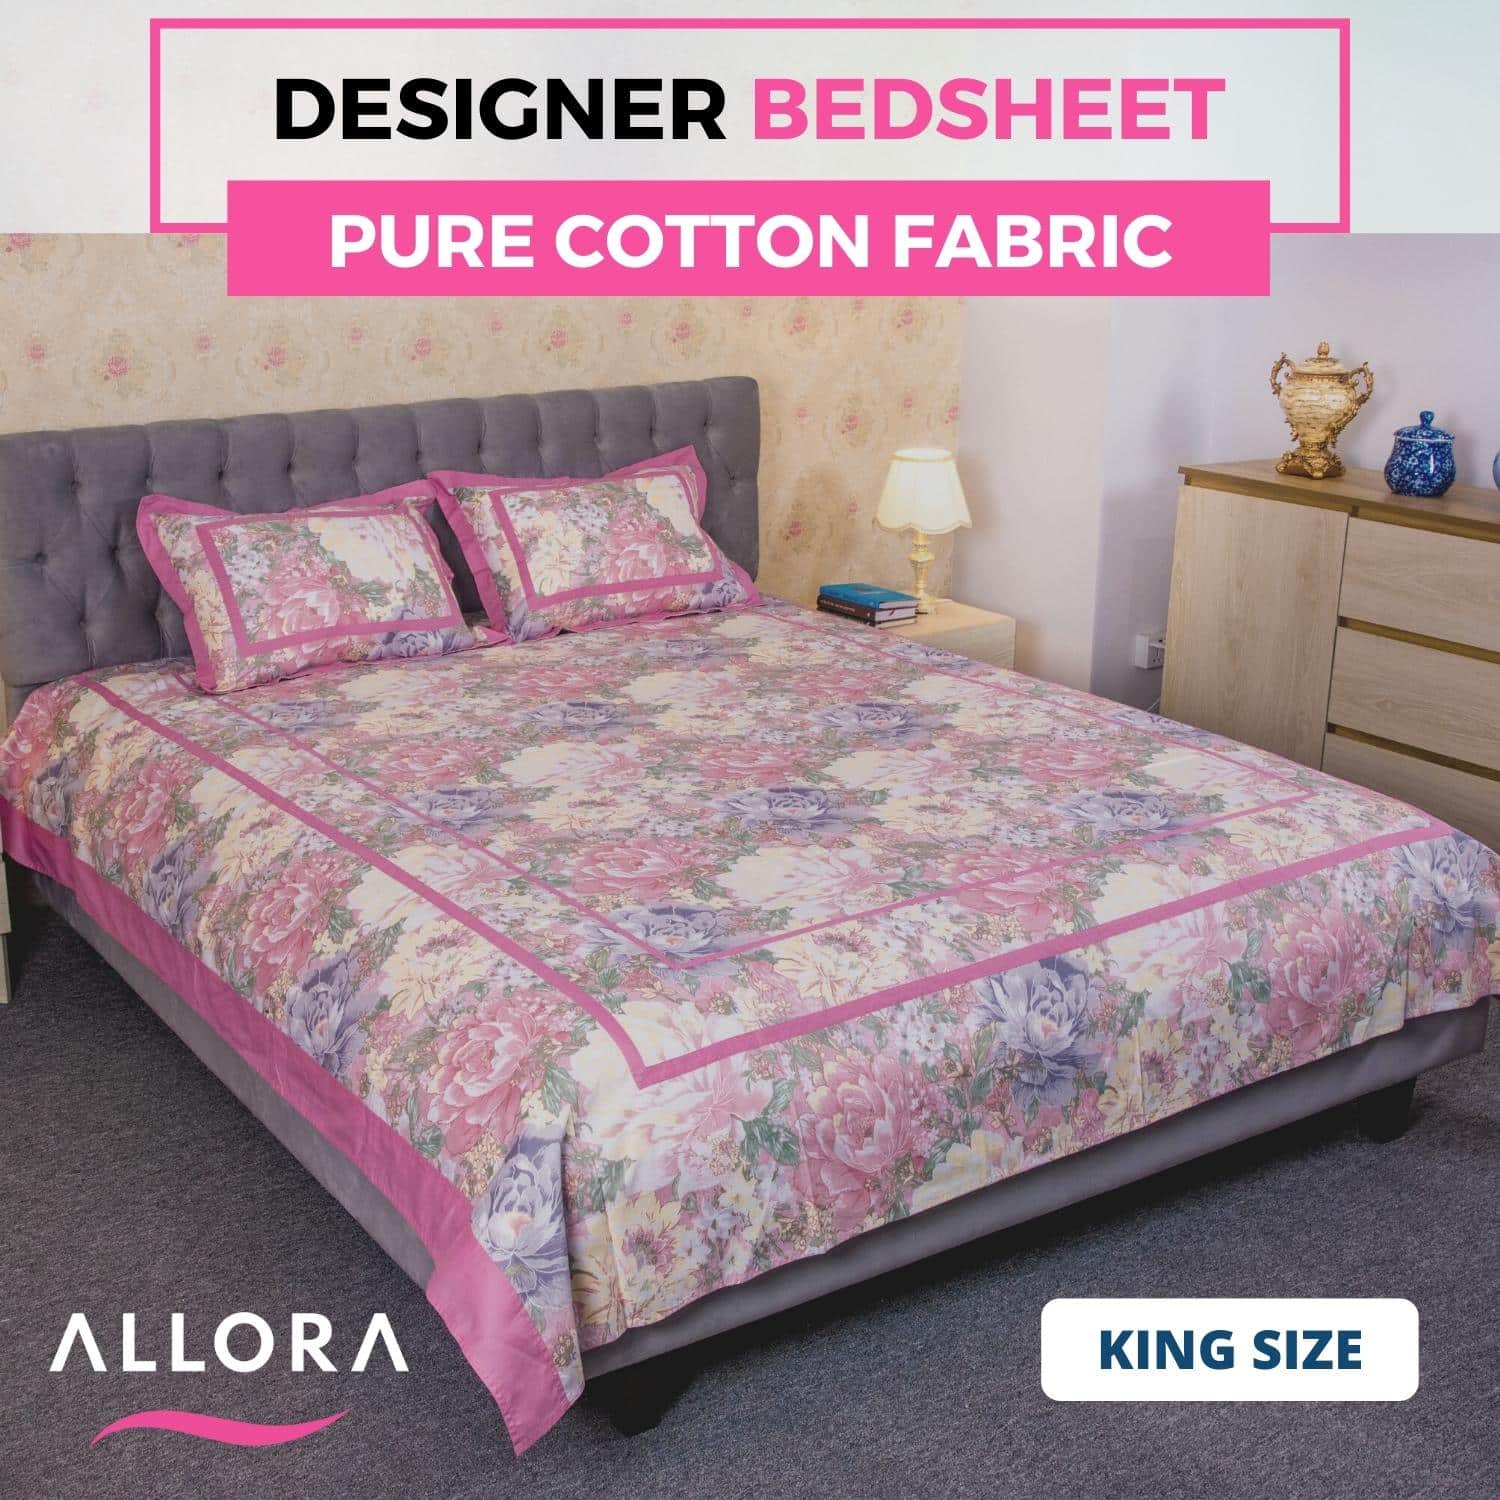 rose print designer bedsheet